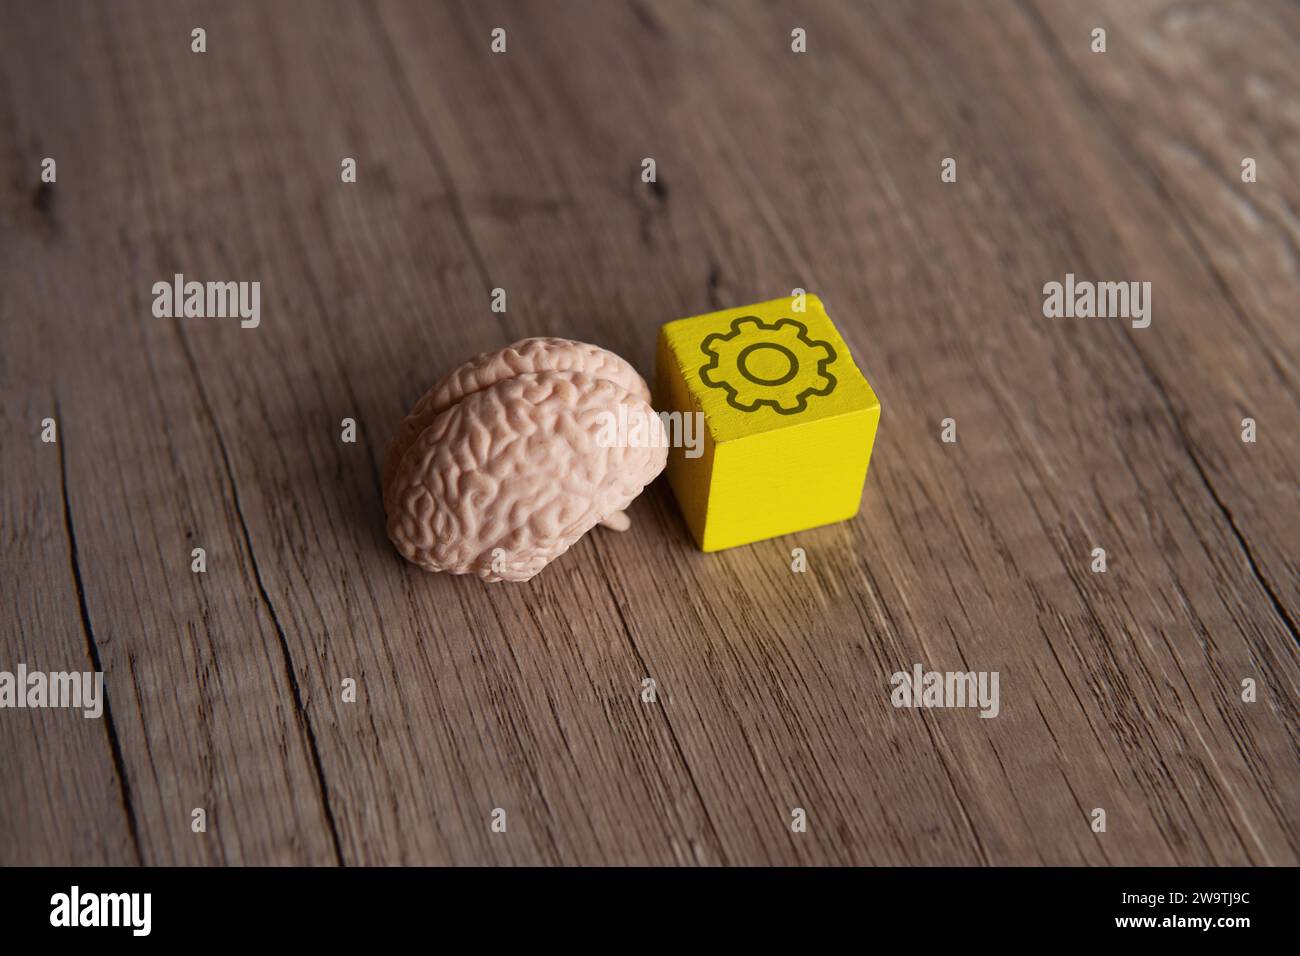 Cervello umano e blocco di legno con icona a ruota dentata. Pensiero cognitivo, brainstorming concettuale. Foto Stock